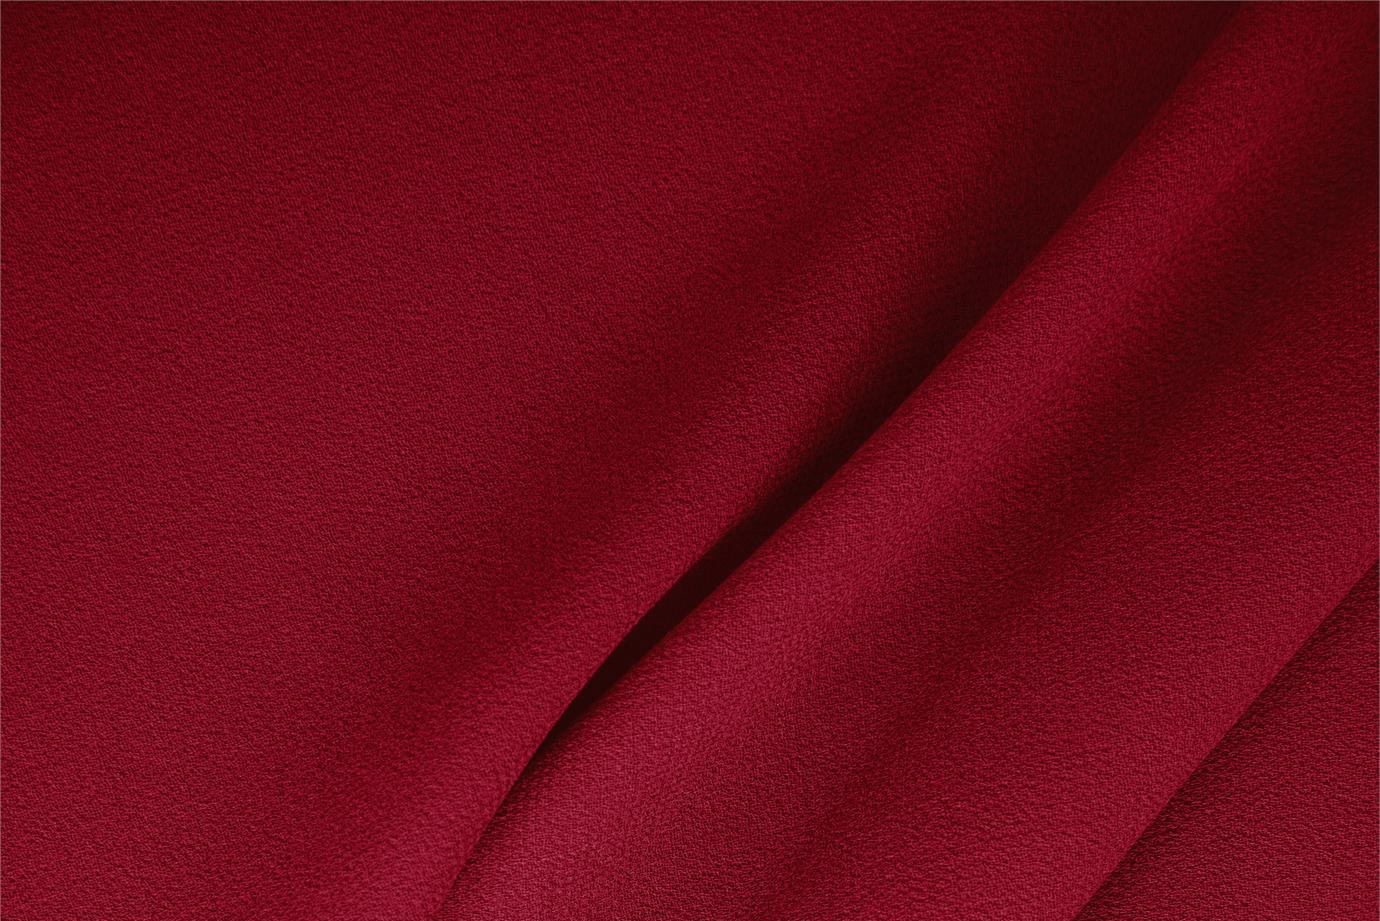 Tissu Double crêpe de laine Rouge campari en Laine pour vêtements